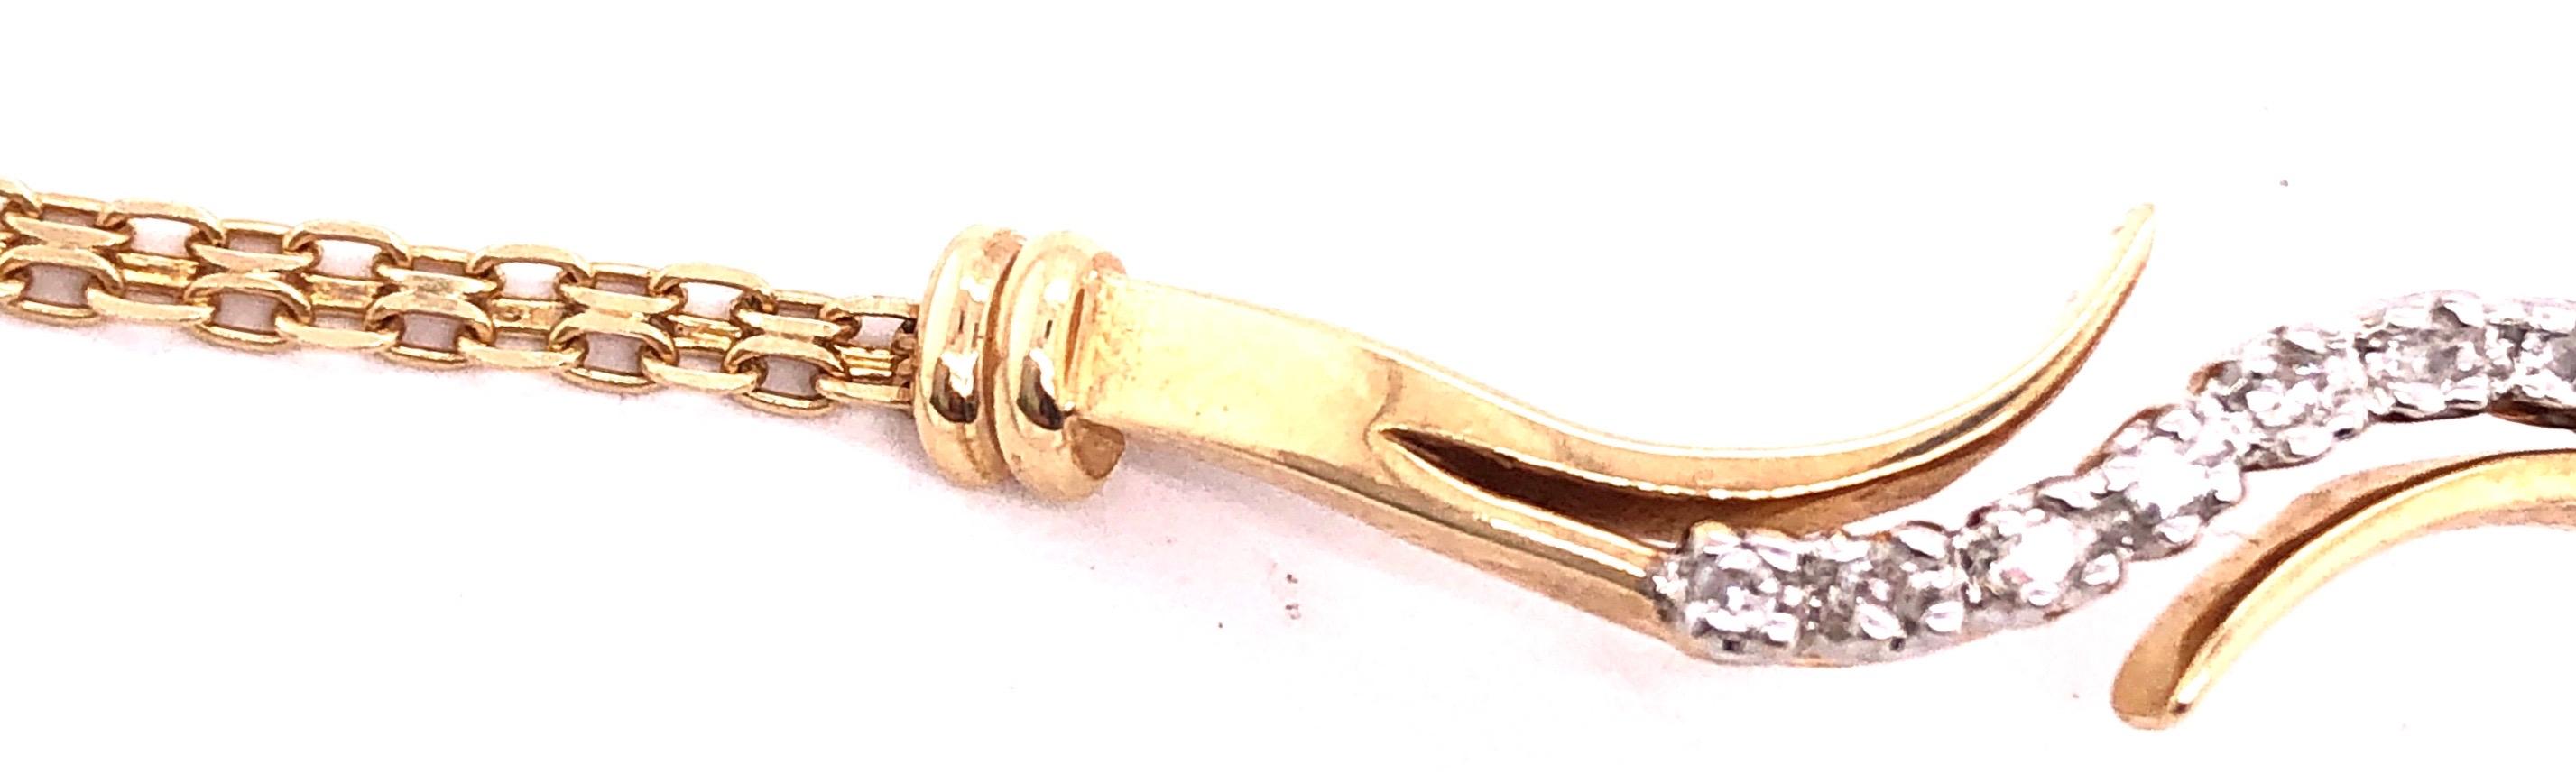 14 Karat Gelbgold 7 Zoll Fancy Link-Armband mit Diamanten 0,14 TDW.
4 Gramm Gesamtgewicht.